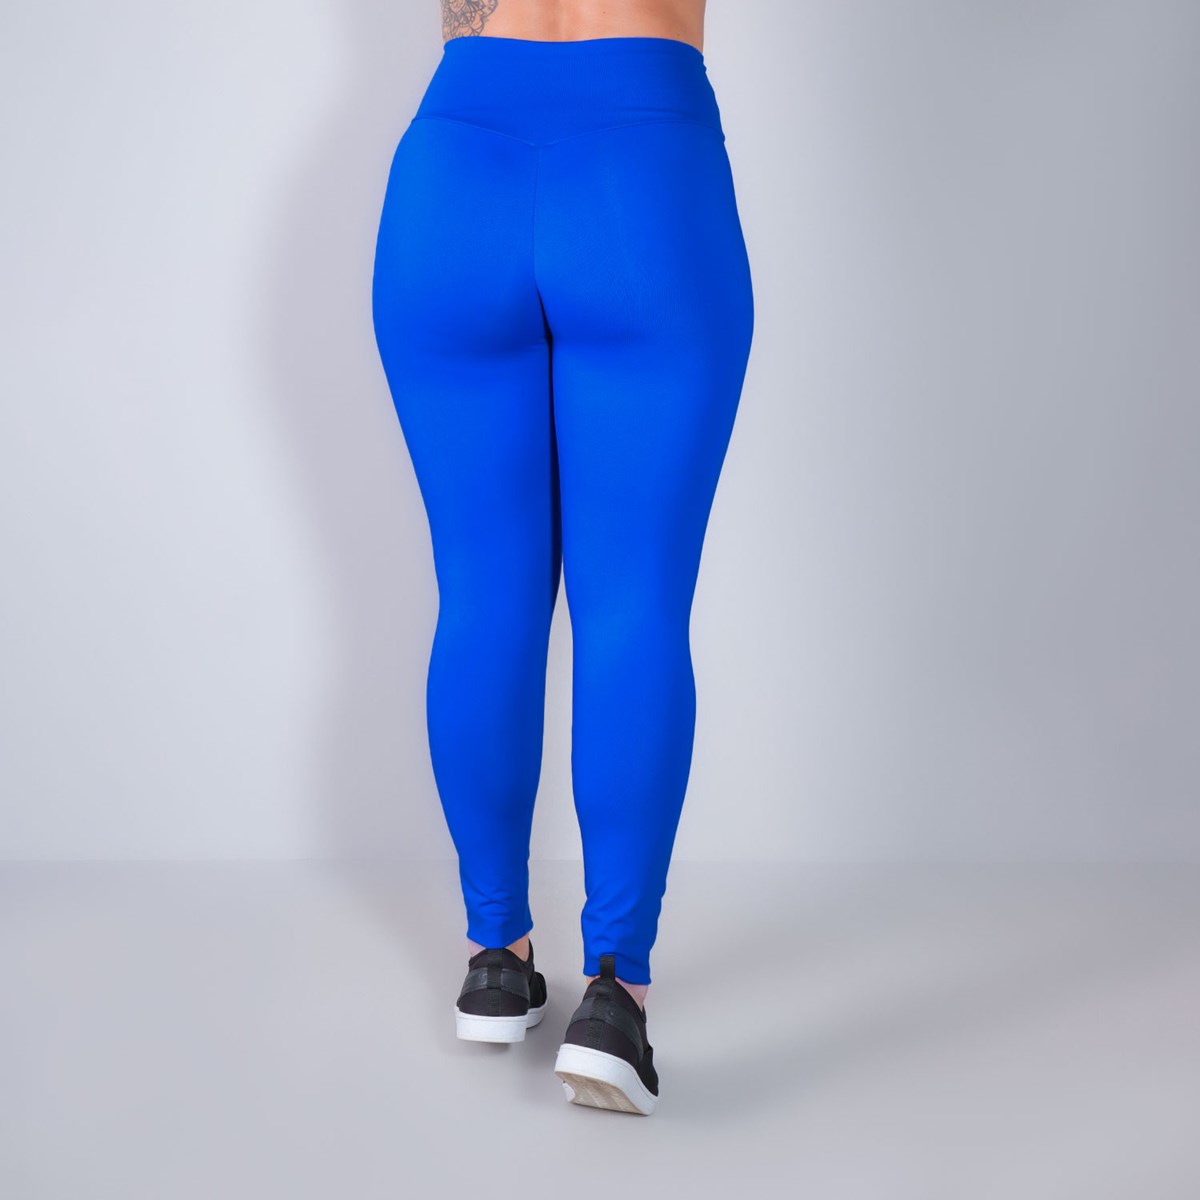 Calça Fitness Empina Bumbum em Poliamida Azul Bic | Ref: 3.3.2449-20